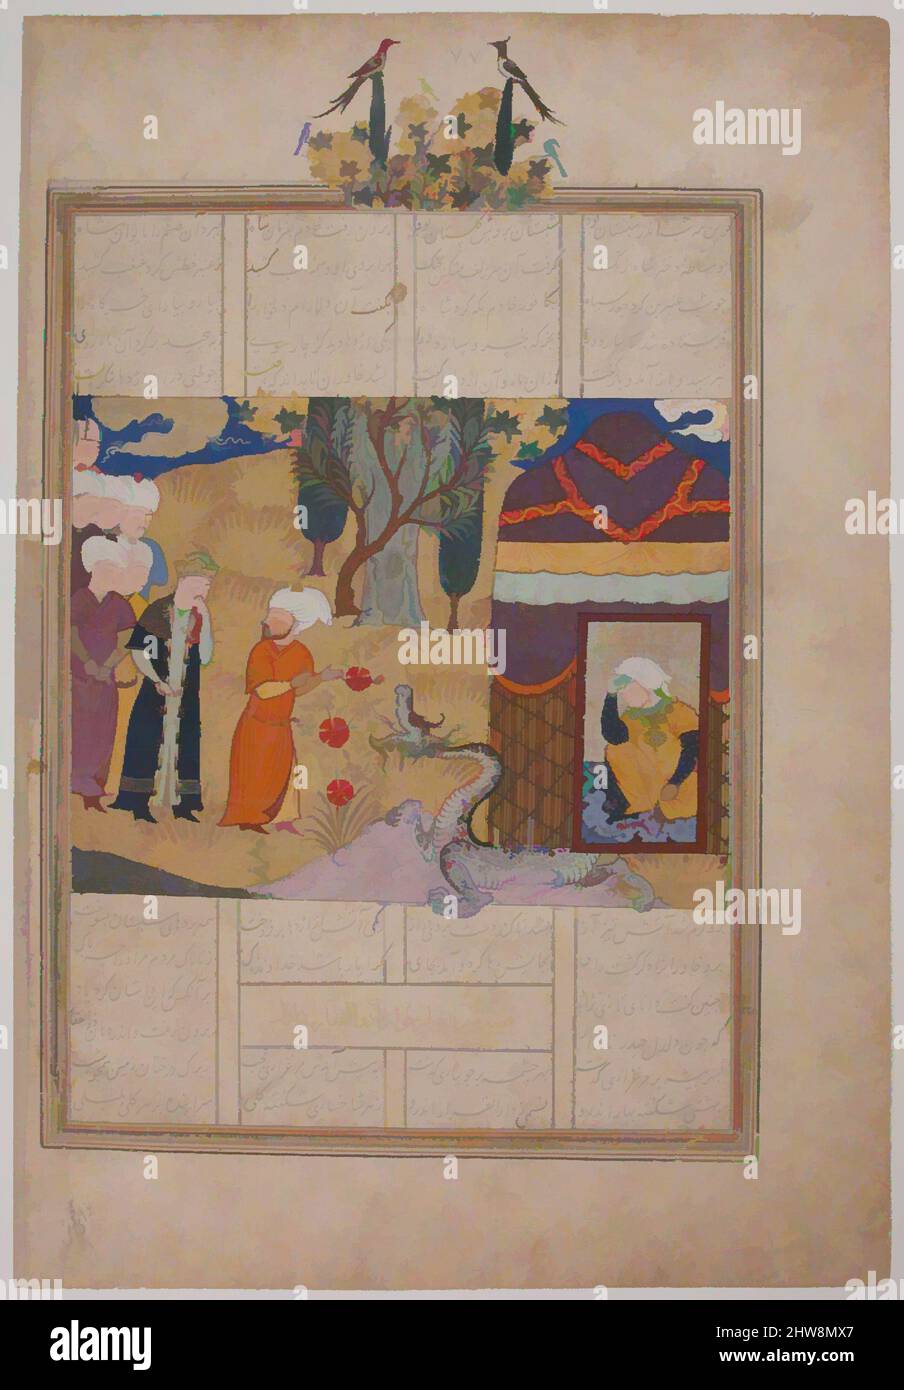 Kunst inspiriert von Folio aus einem Khavarannama (das Buch des Ostens) von ibn Husam al-DIN, ca. 1476–86, dem Iran zugeschrieben, Shiraz, opakes Aquarell, Silber, Und Gold auf Papier, Breite. 11 1/8in. (28,2cm), Codices, The Khavarannama (Book of the East), berichtet über die Abenteuer von ‘Ali, Cousin, Klassischen Werken, die von Artotop mit einem Schuss Moderne modernisiert wurden. Formen, Farbe und Wert, auffällige visuelle Wirkung auf Kunst. Emotionen durch Freiheit von Kunstwerken auf zeitgemäße Weise. Eine zeitlose Botschaft, die eine wild kreative neue Richtung verfolgt. Künstler, die sich dem digitalen Medium zuwenden und die Artotop NFT erschaffen Stockfoto